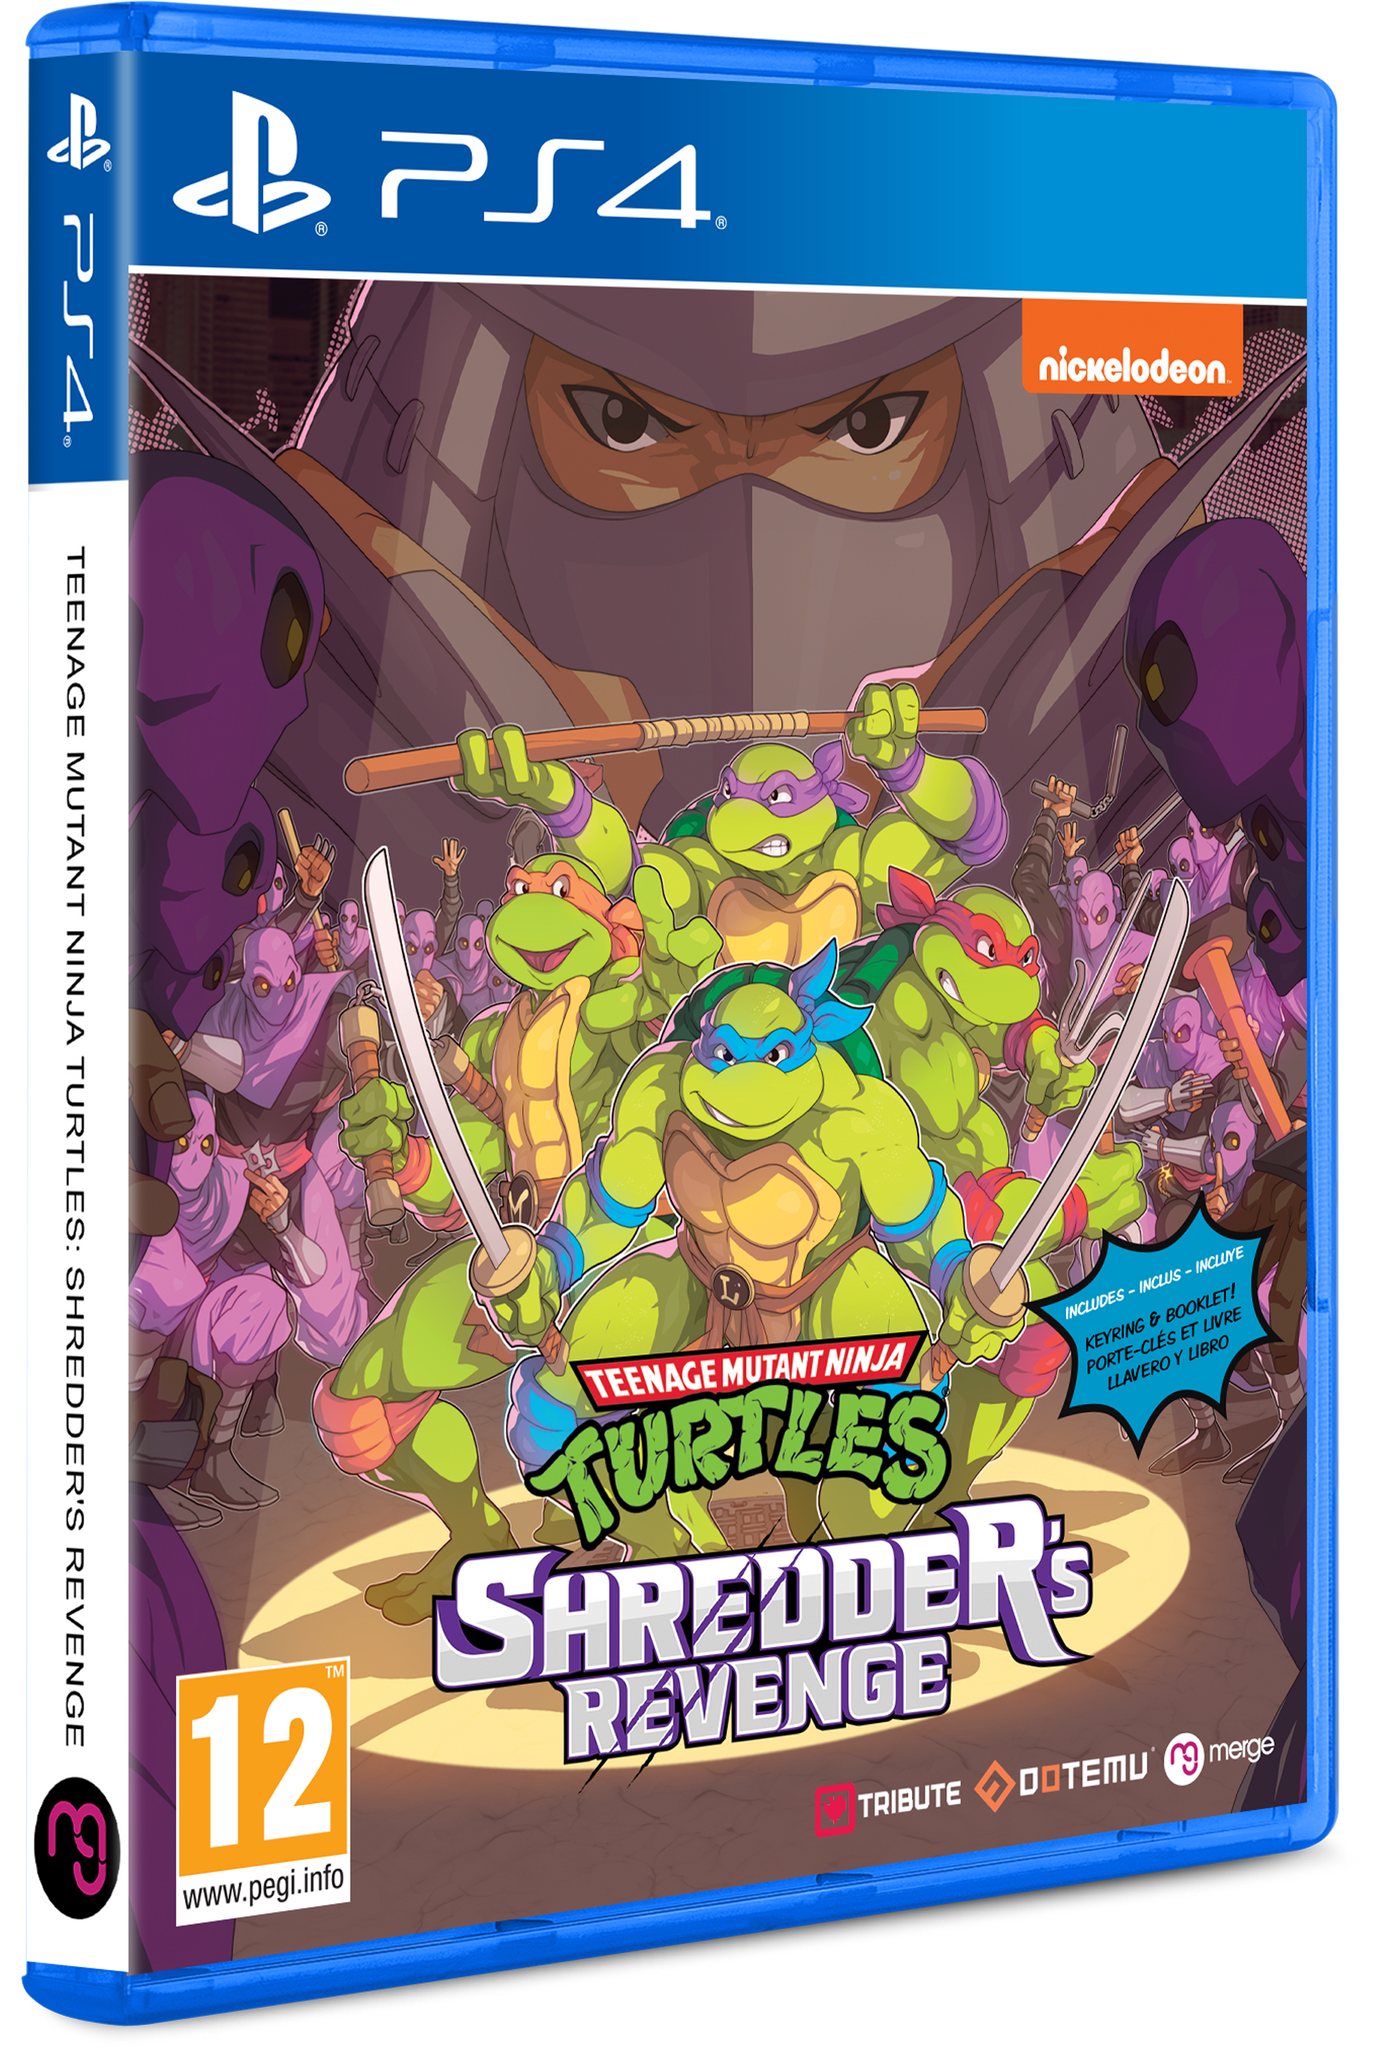 Teenage Mutant Ninja Turtles: Shredder's - Standard Edition (P – Signature Edition Games